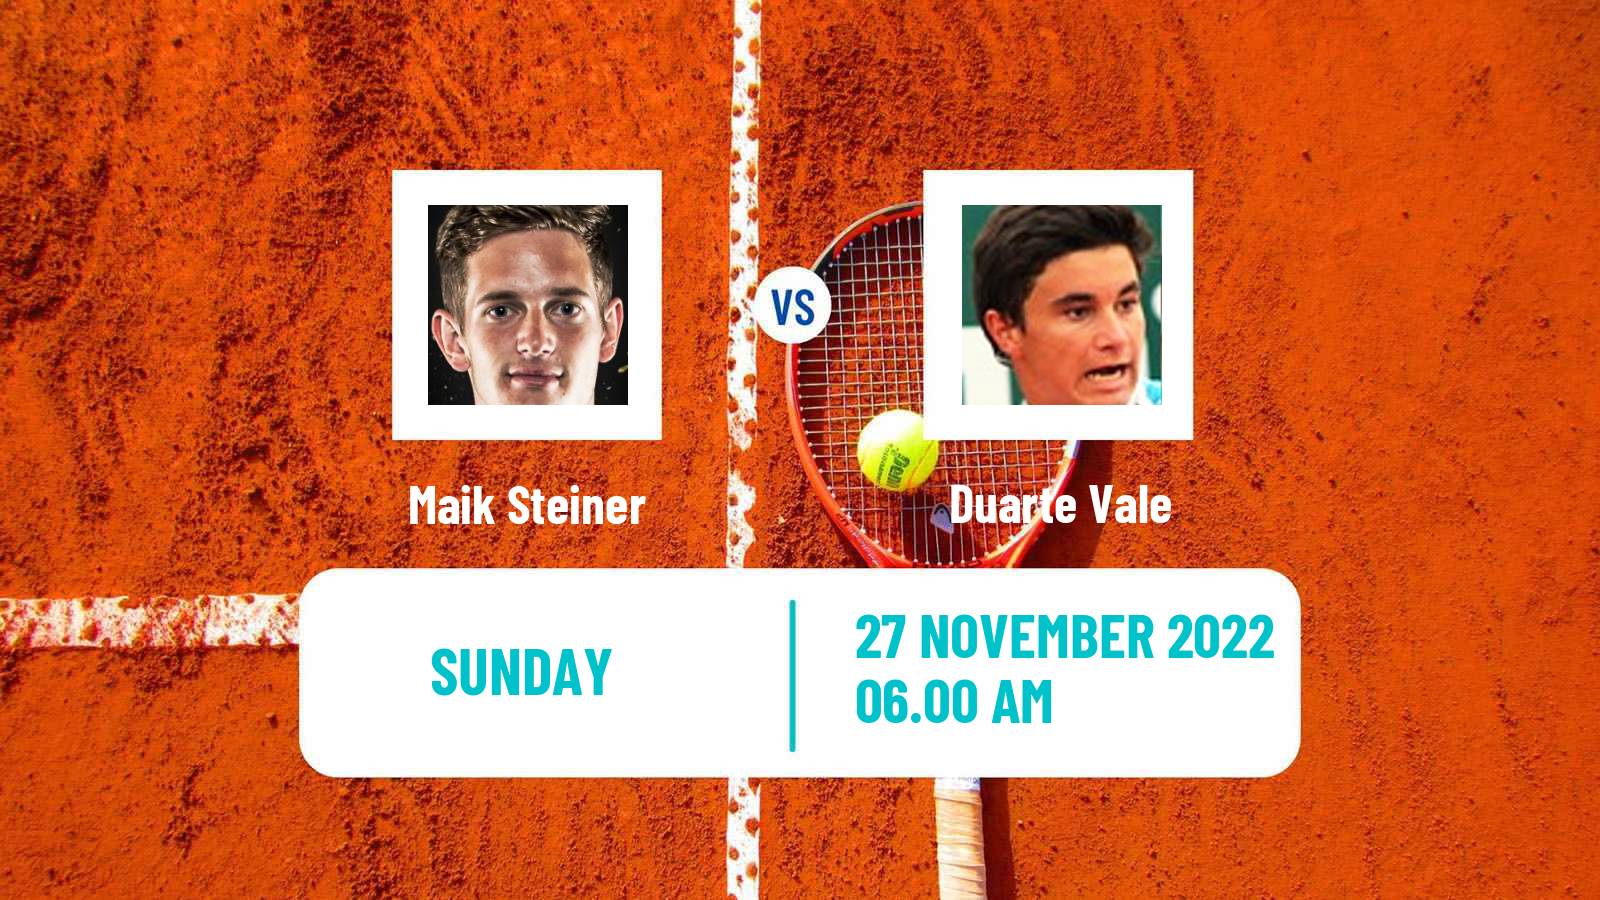 Tennis ATP Challenger Maik Steiner - Duarte Vale